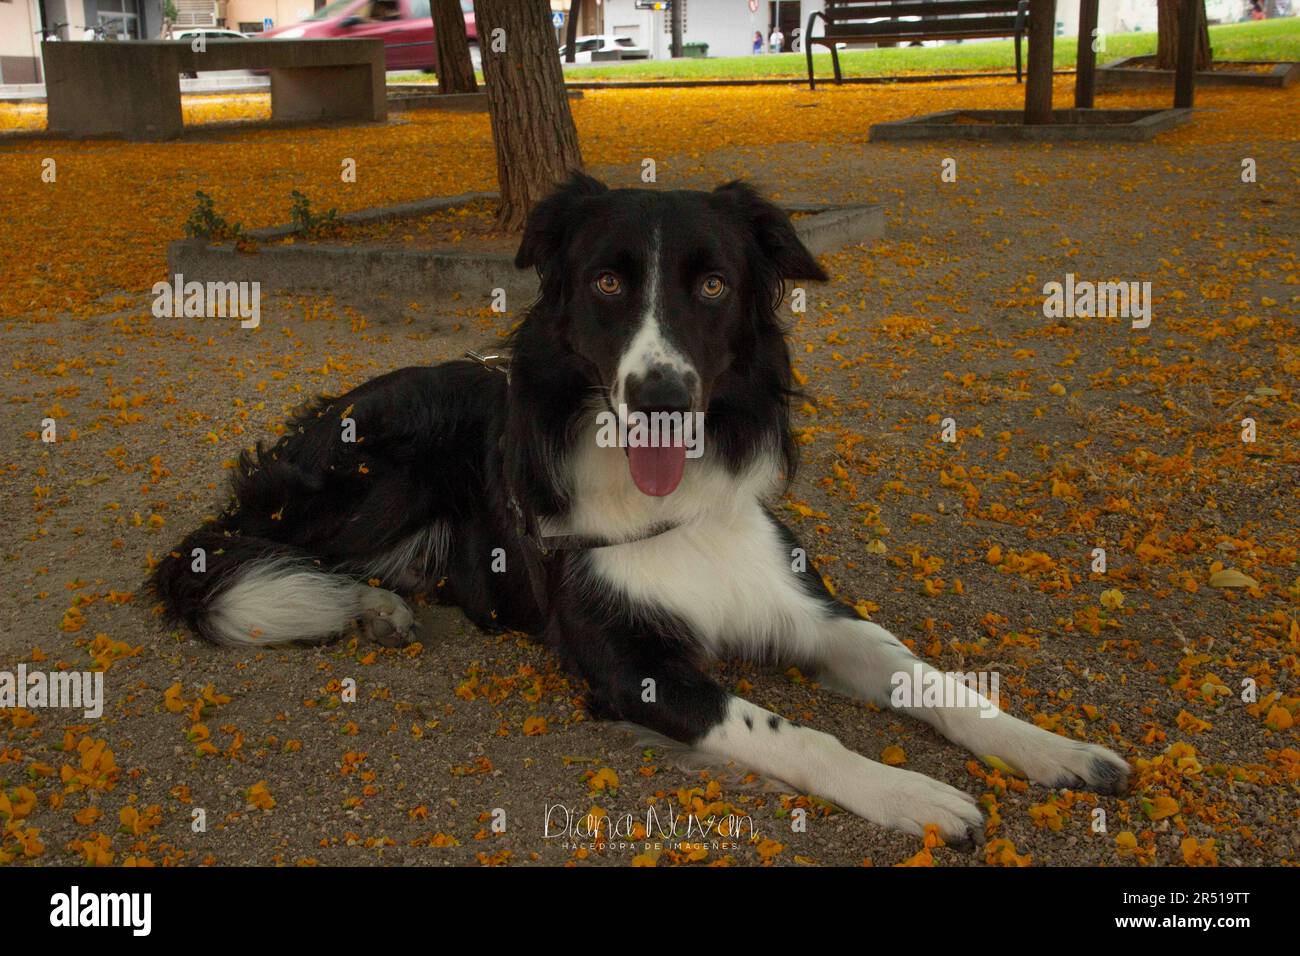 Amor canino, Border Collie, Vida Animal / Dog Love, Border Collie, Animal Life / Stockfoto